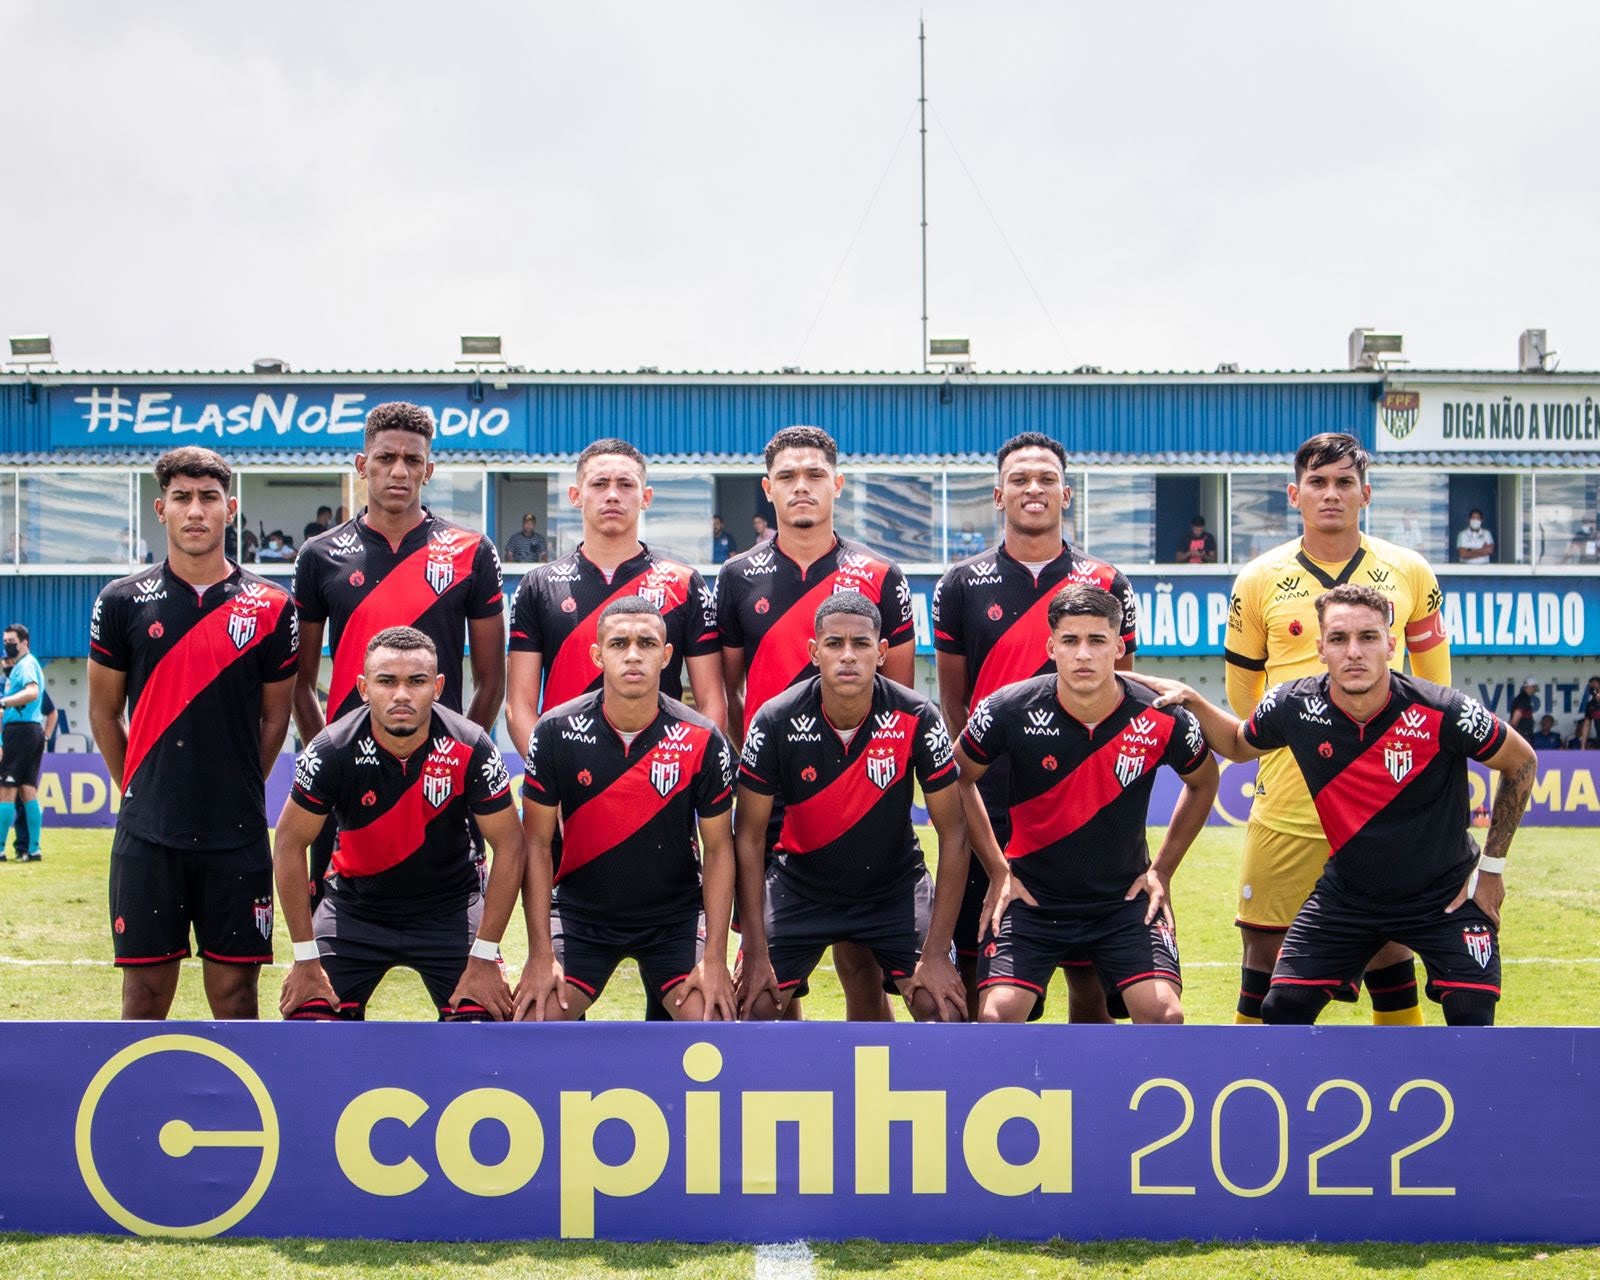 Atlético-GO Copinha 2022